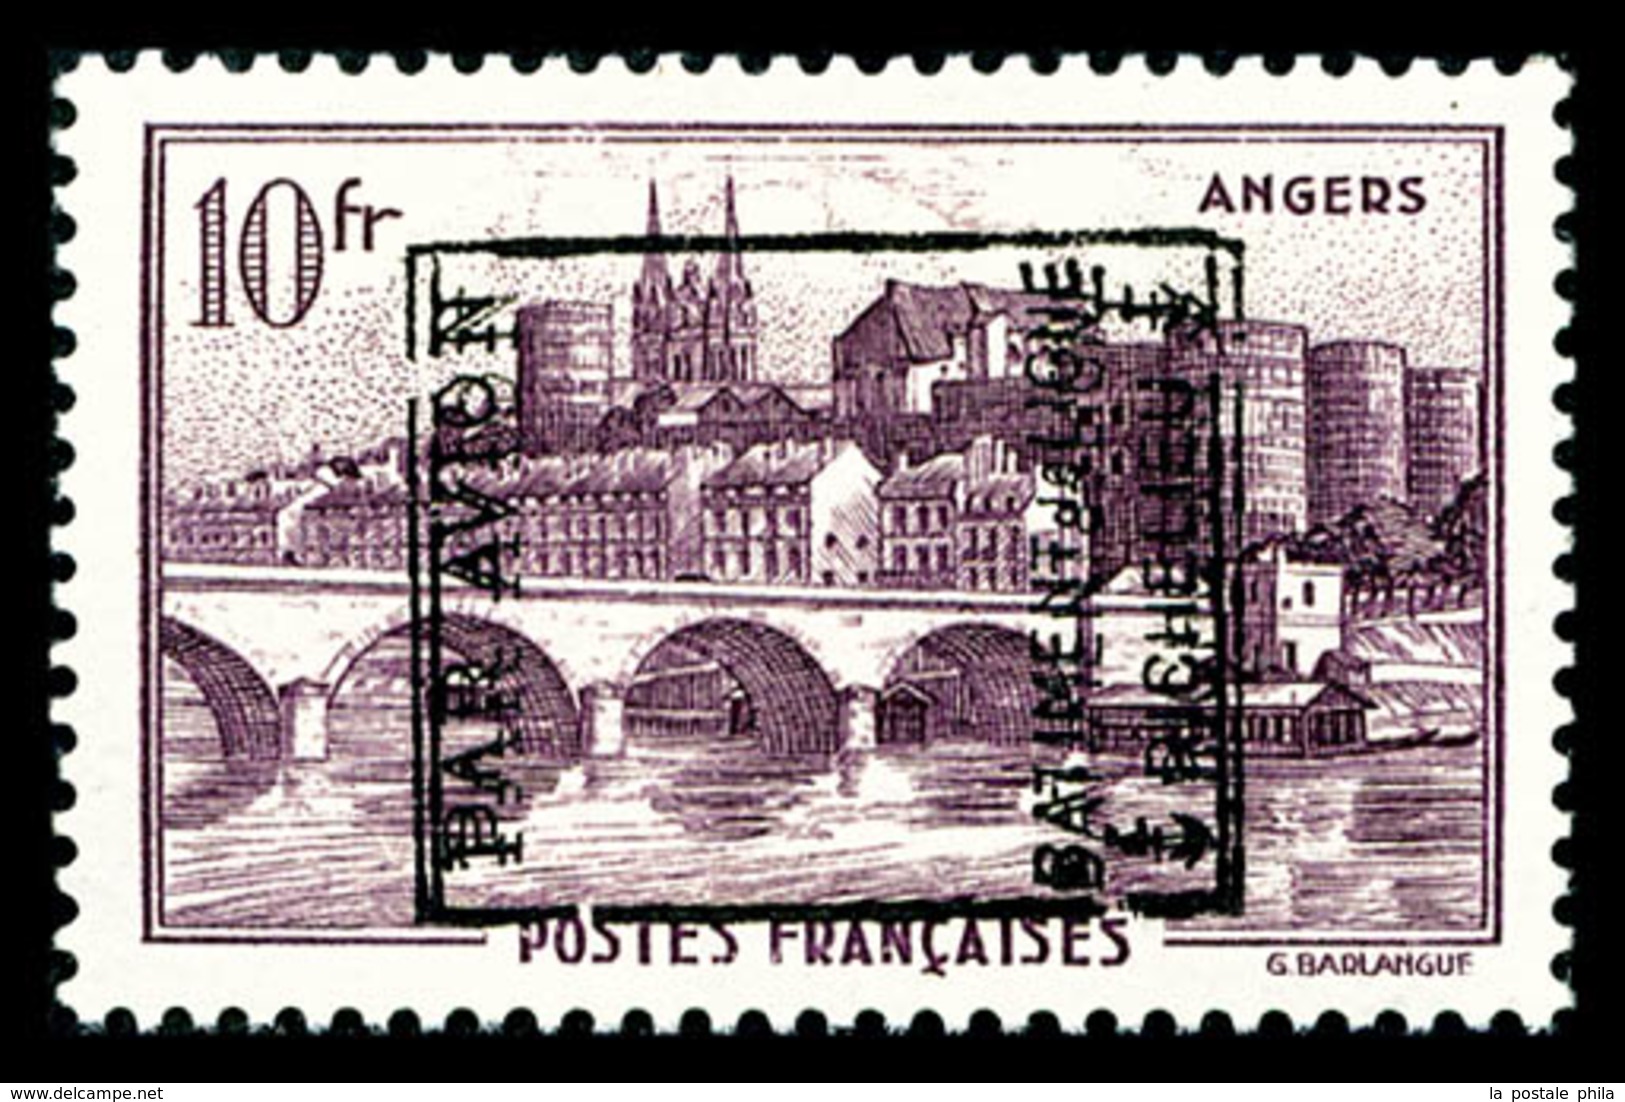 ** N°10, Timbre De France: Angers (N°500), 10F Violet, Double Surcharge 'PAR AVION RICHELIEU', Superbe, R.R. (certificat - Military Airmail